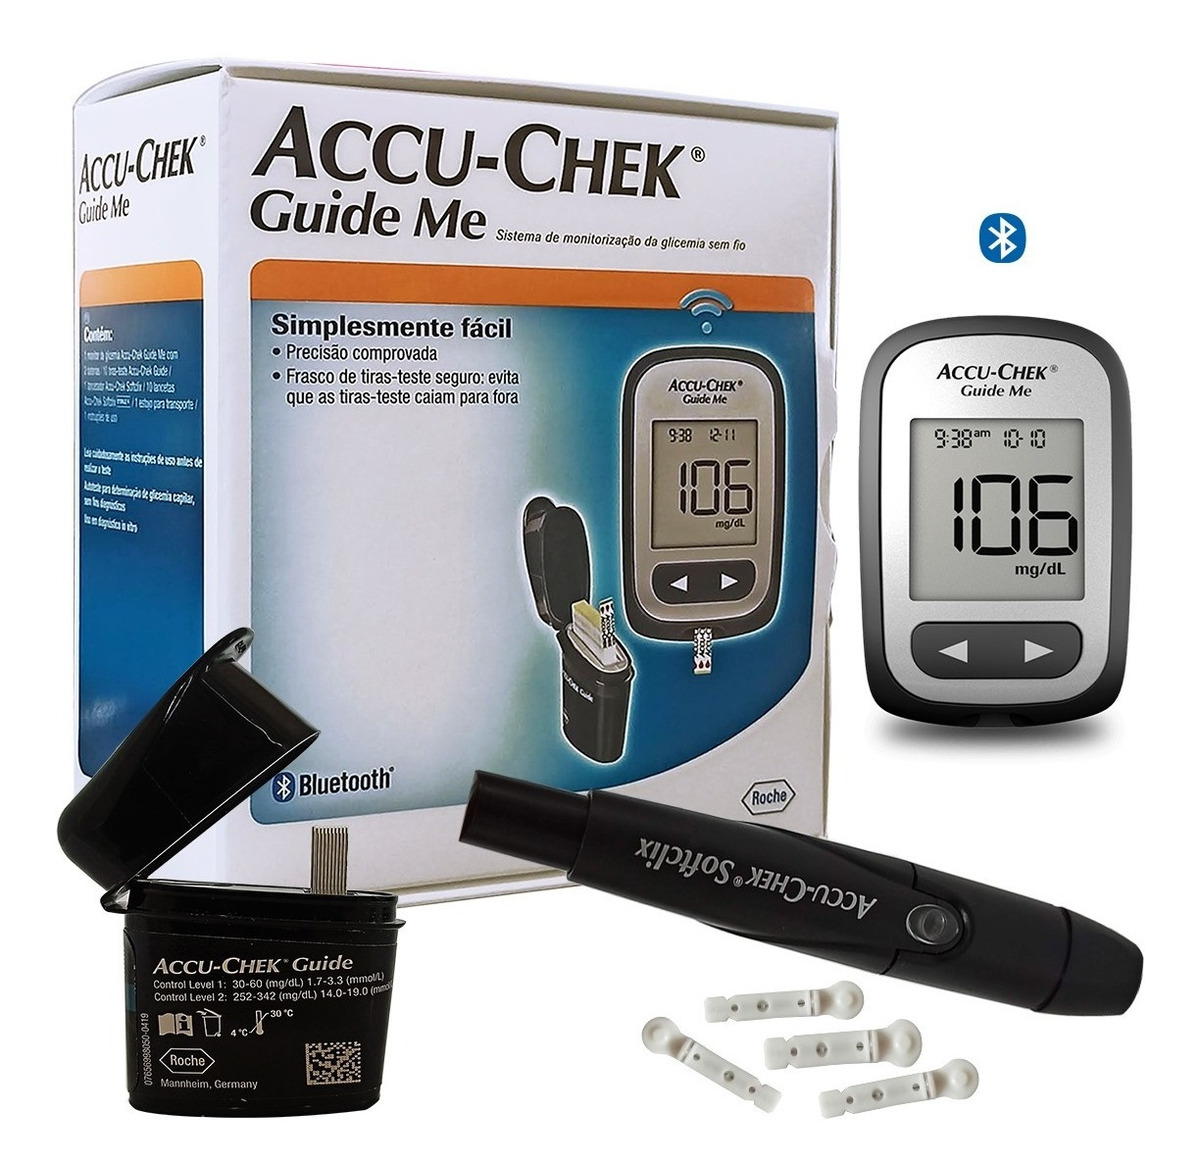 Glicosimetro Guide Me Accu-chek Kit Profissional Completo | Mercado Livre